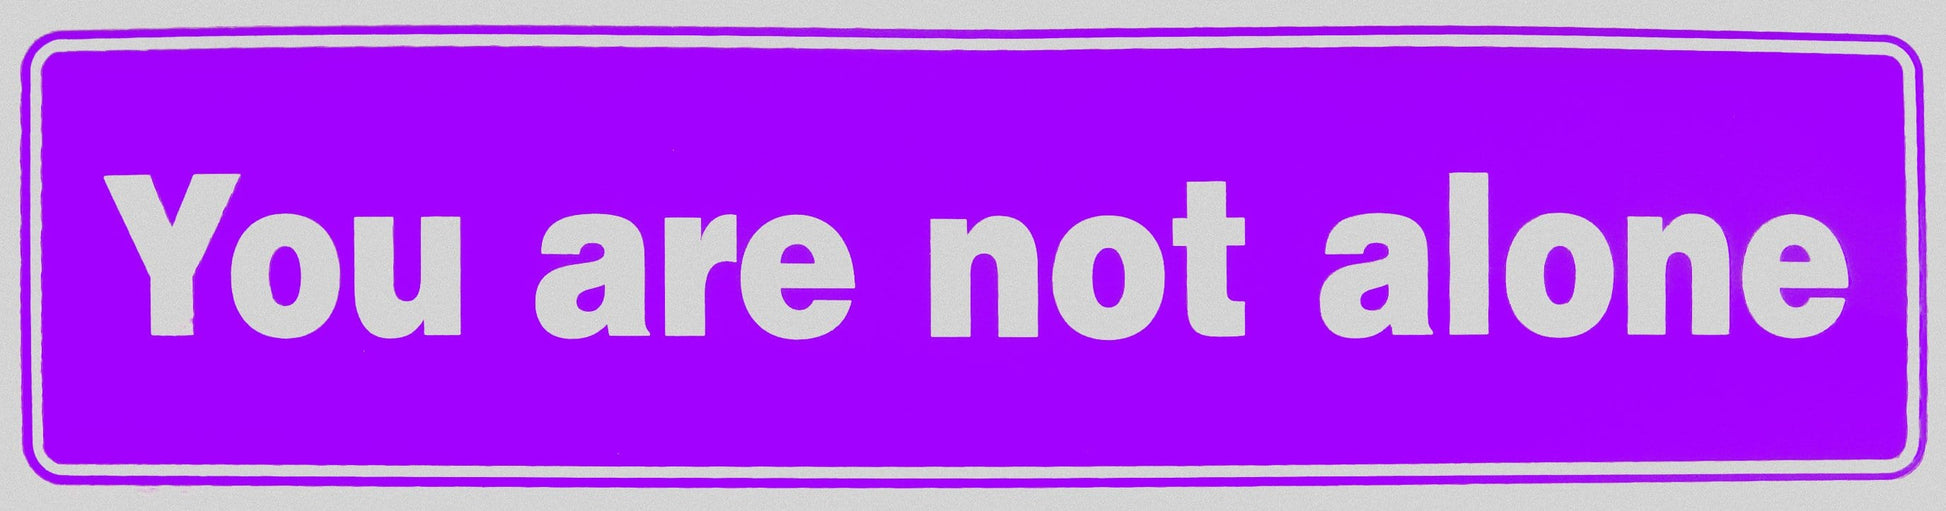 You Are Not Alone Bumper Sticker Purple